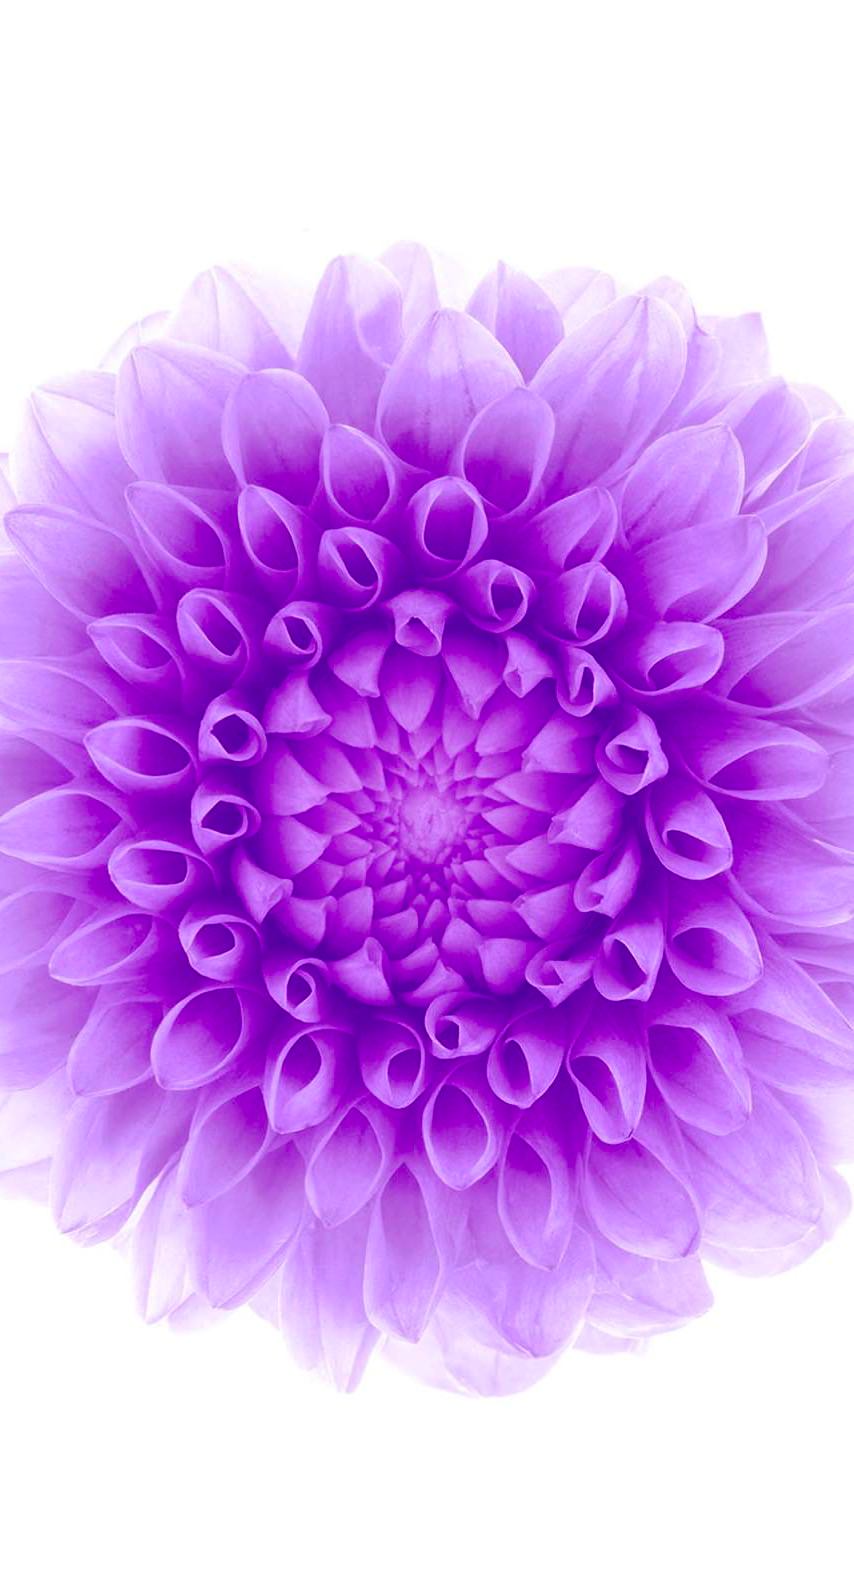 ラブリー花 紫 壁紙 Iphone 最高の花の画像